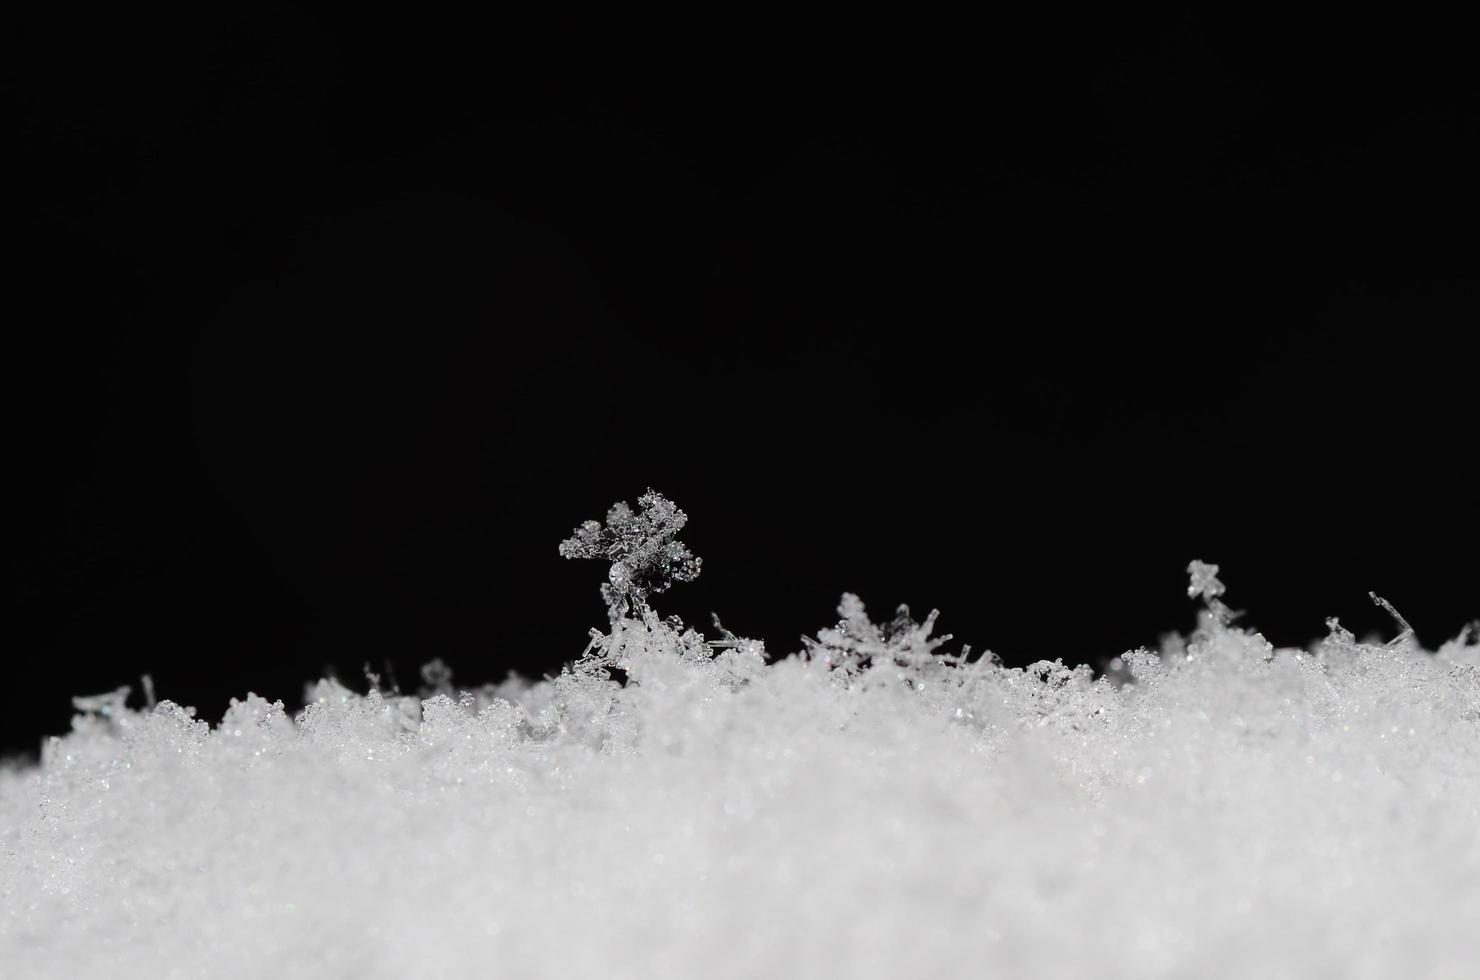 strutture delicate in neve su nero foto